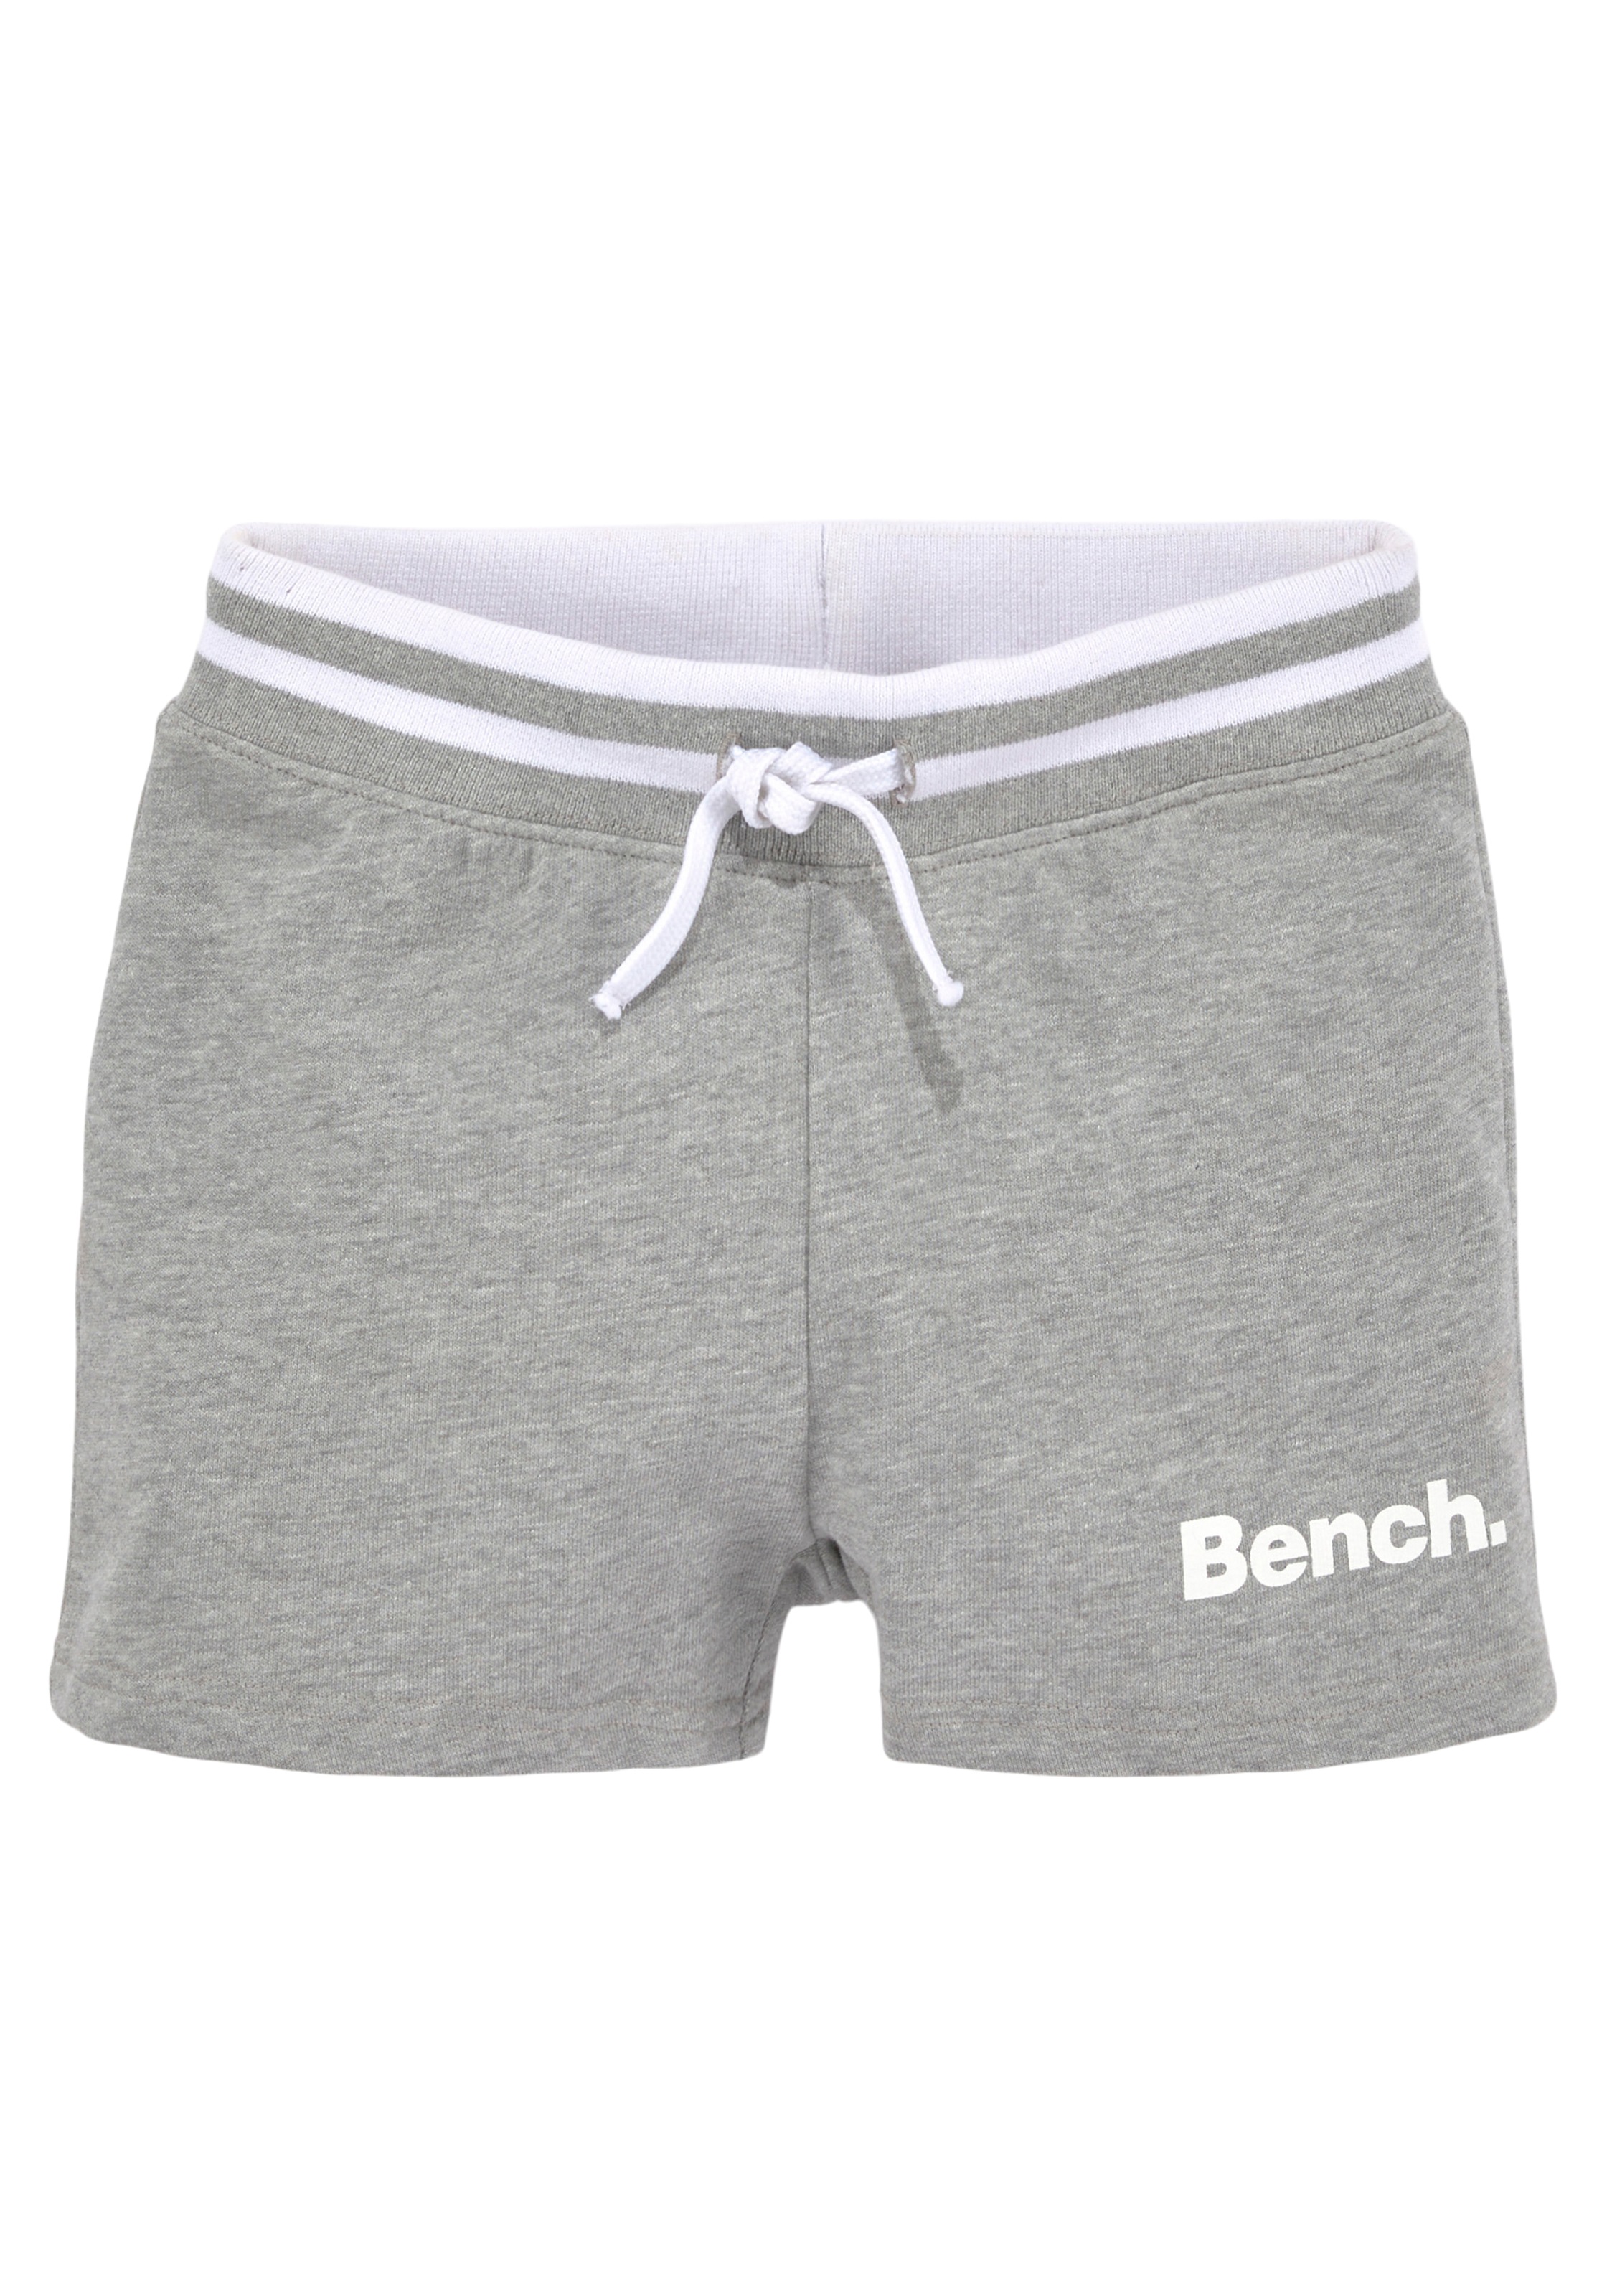 Bench. Sweatshorts, mit Logo-Druck online kaufen | BAUR